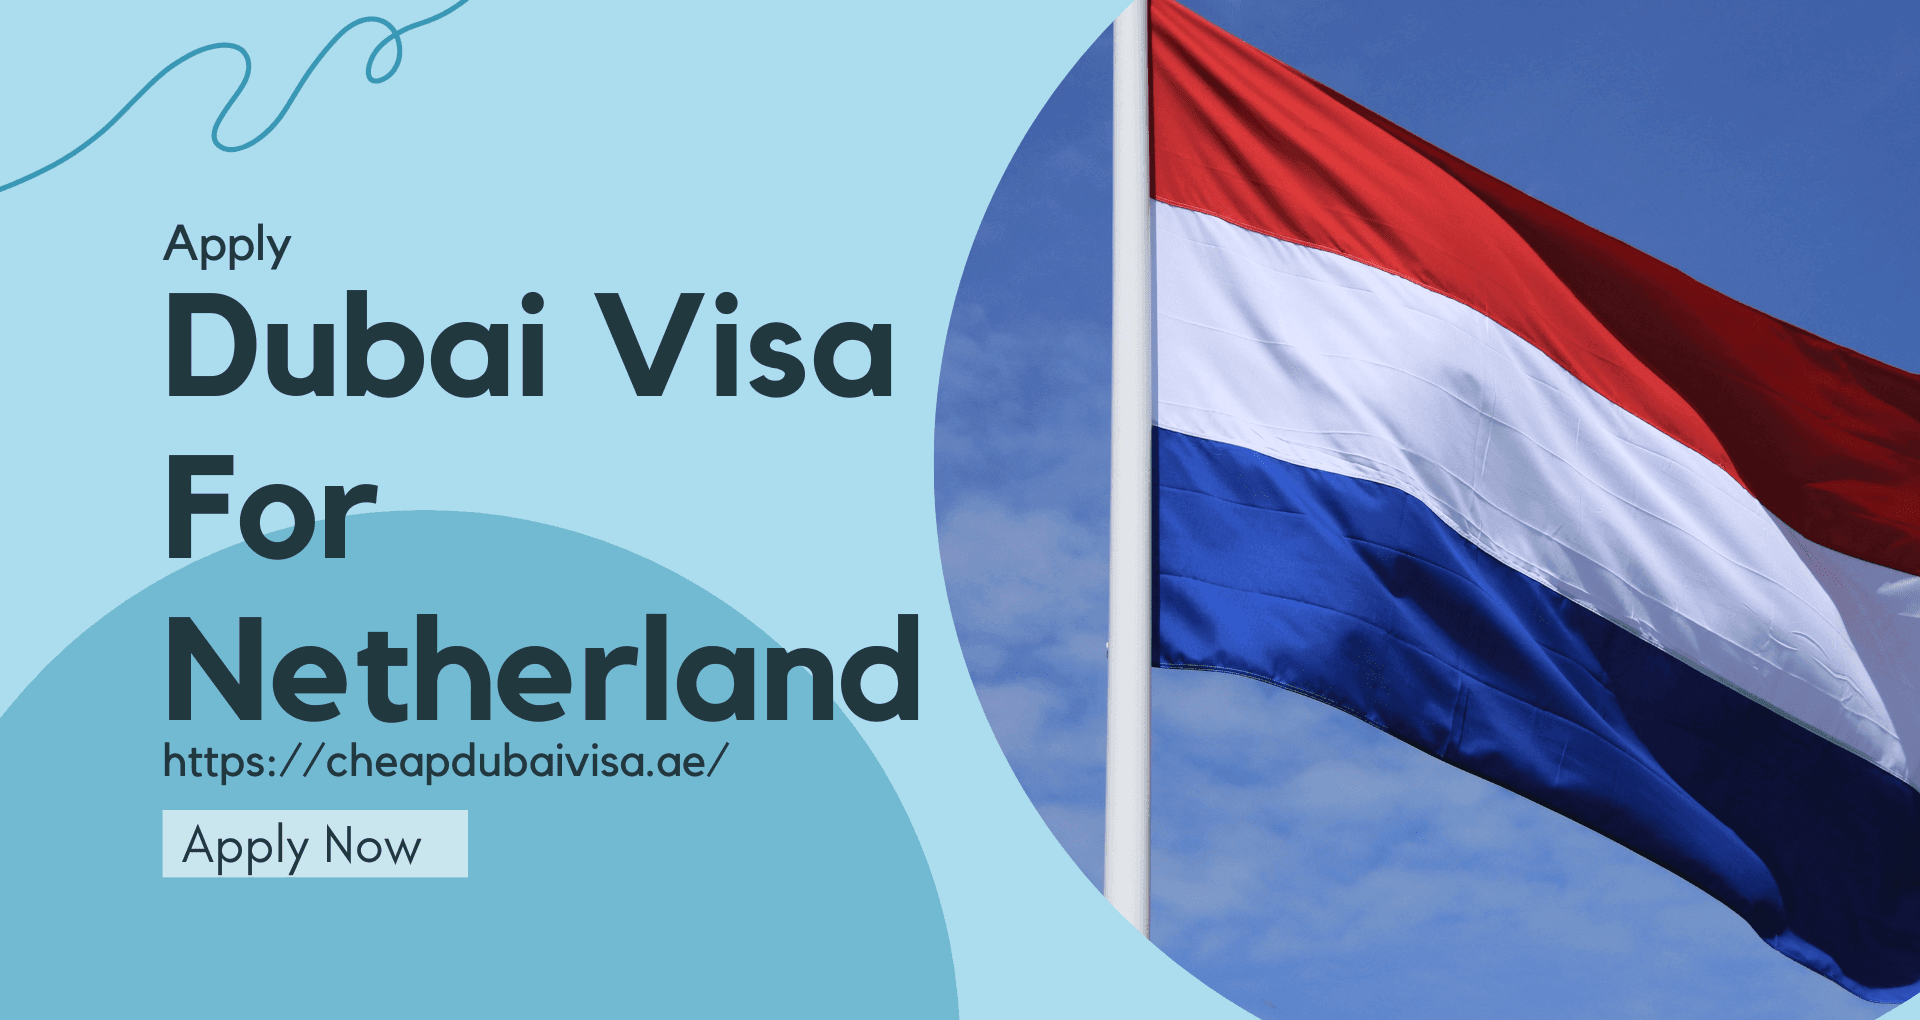 Dubai visa for Netherlands